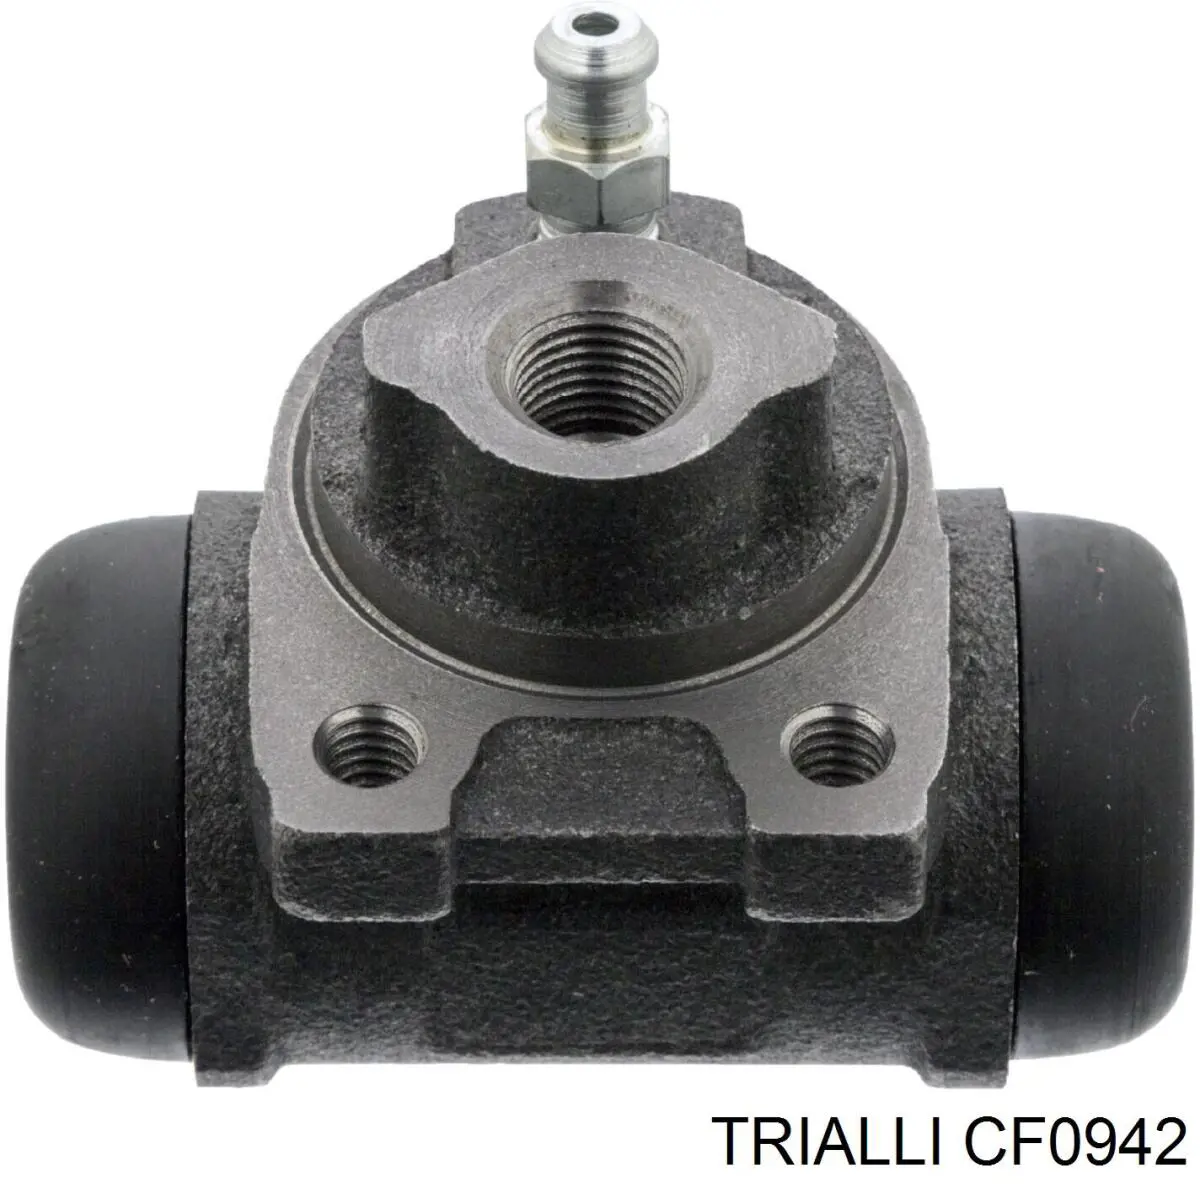 CF 0942 Trialli cilindro traseiro do freio de rodas de trabalho